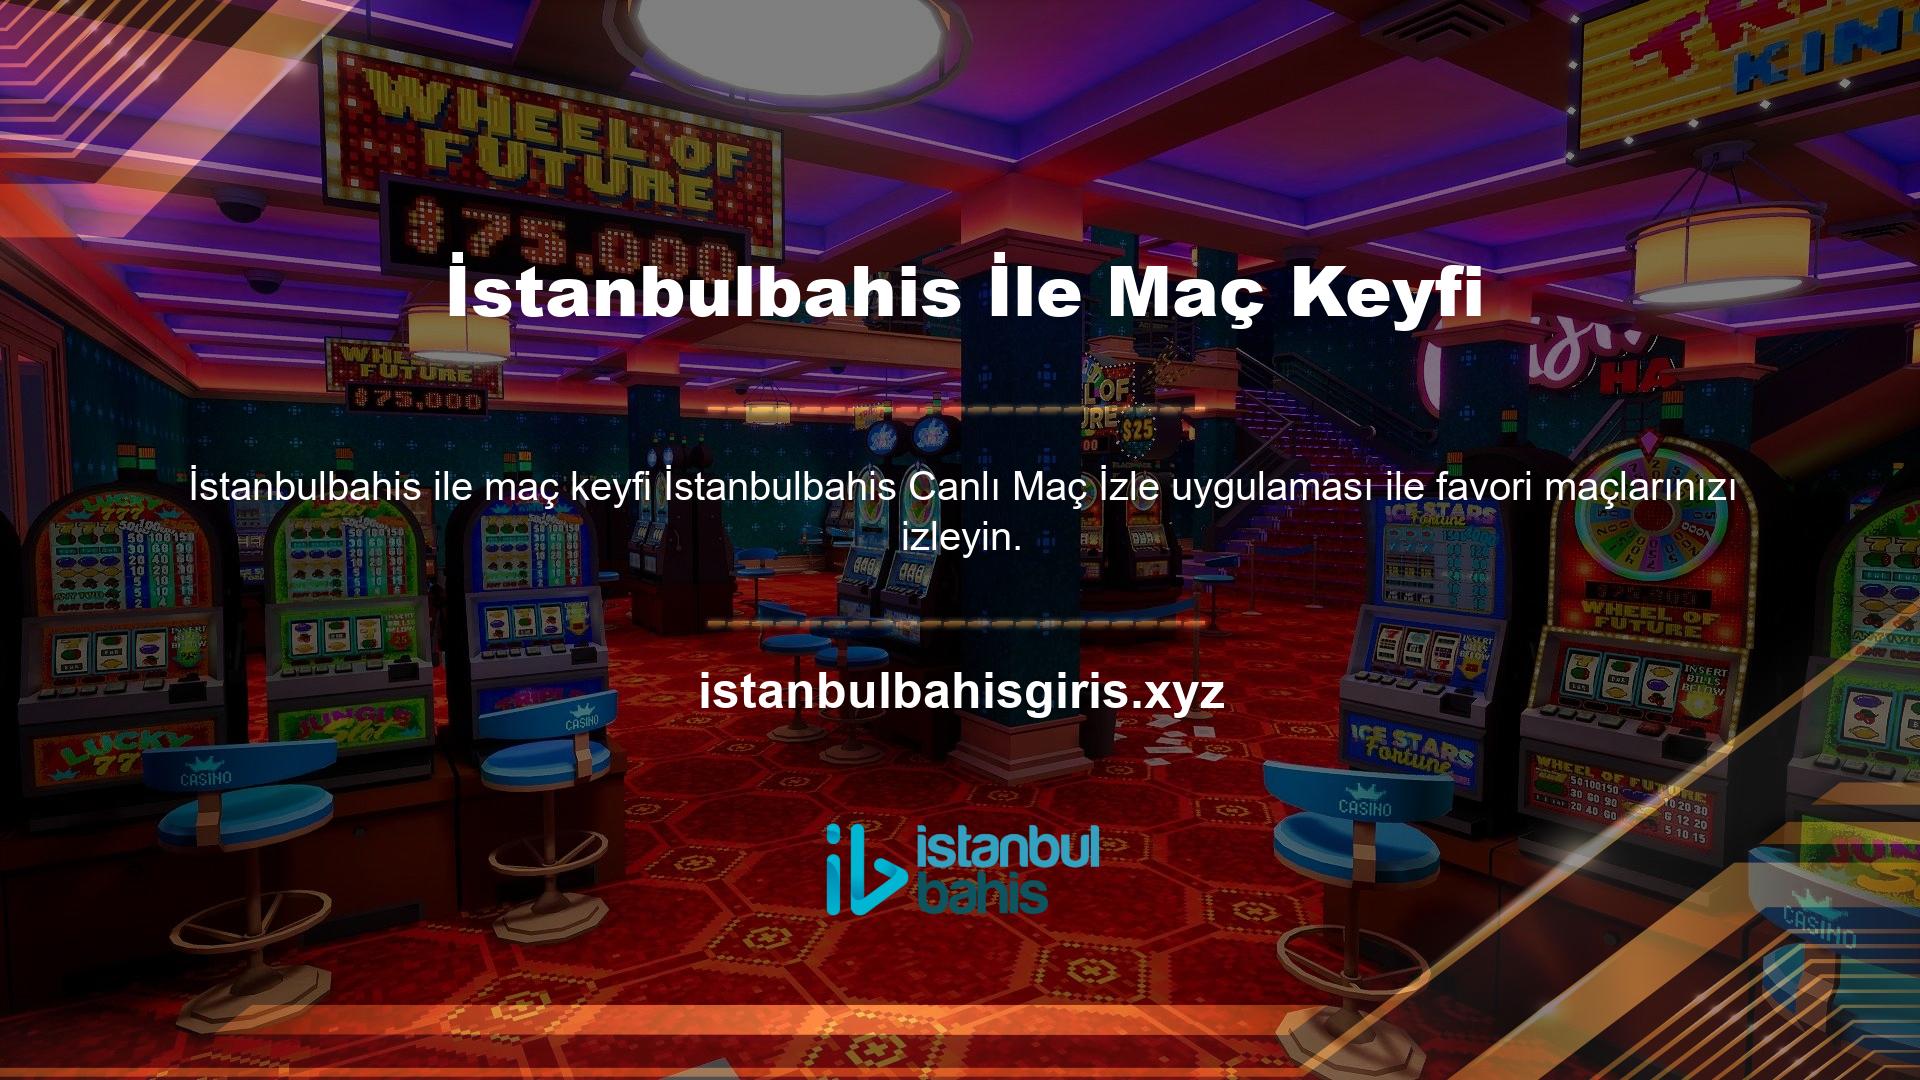 Sevdiklerinizle buluşabilir, İstanbulbahis TV avantajlarından faydalanabilir, birbirinden eğlenceli oyun yarışmalarını deneyimleyebilirsiniz